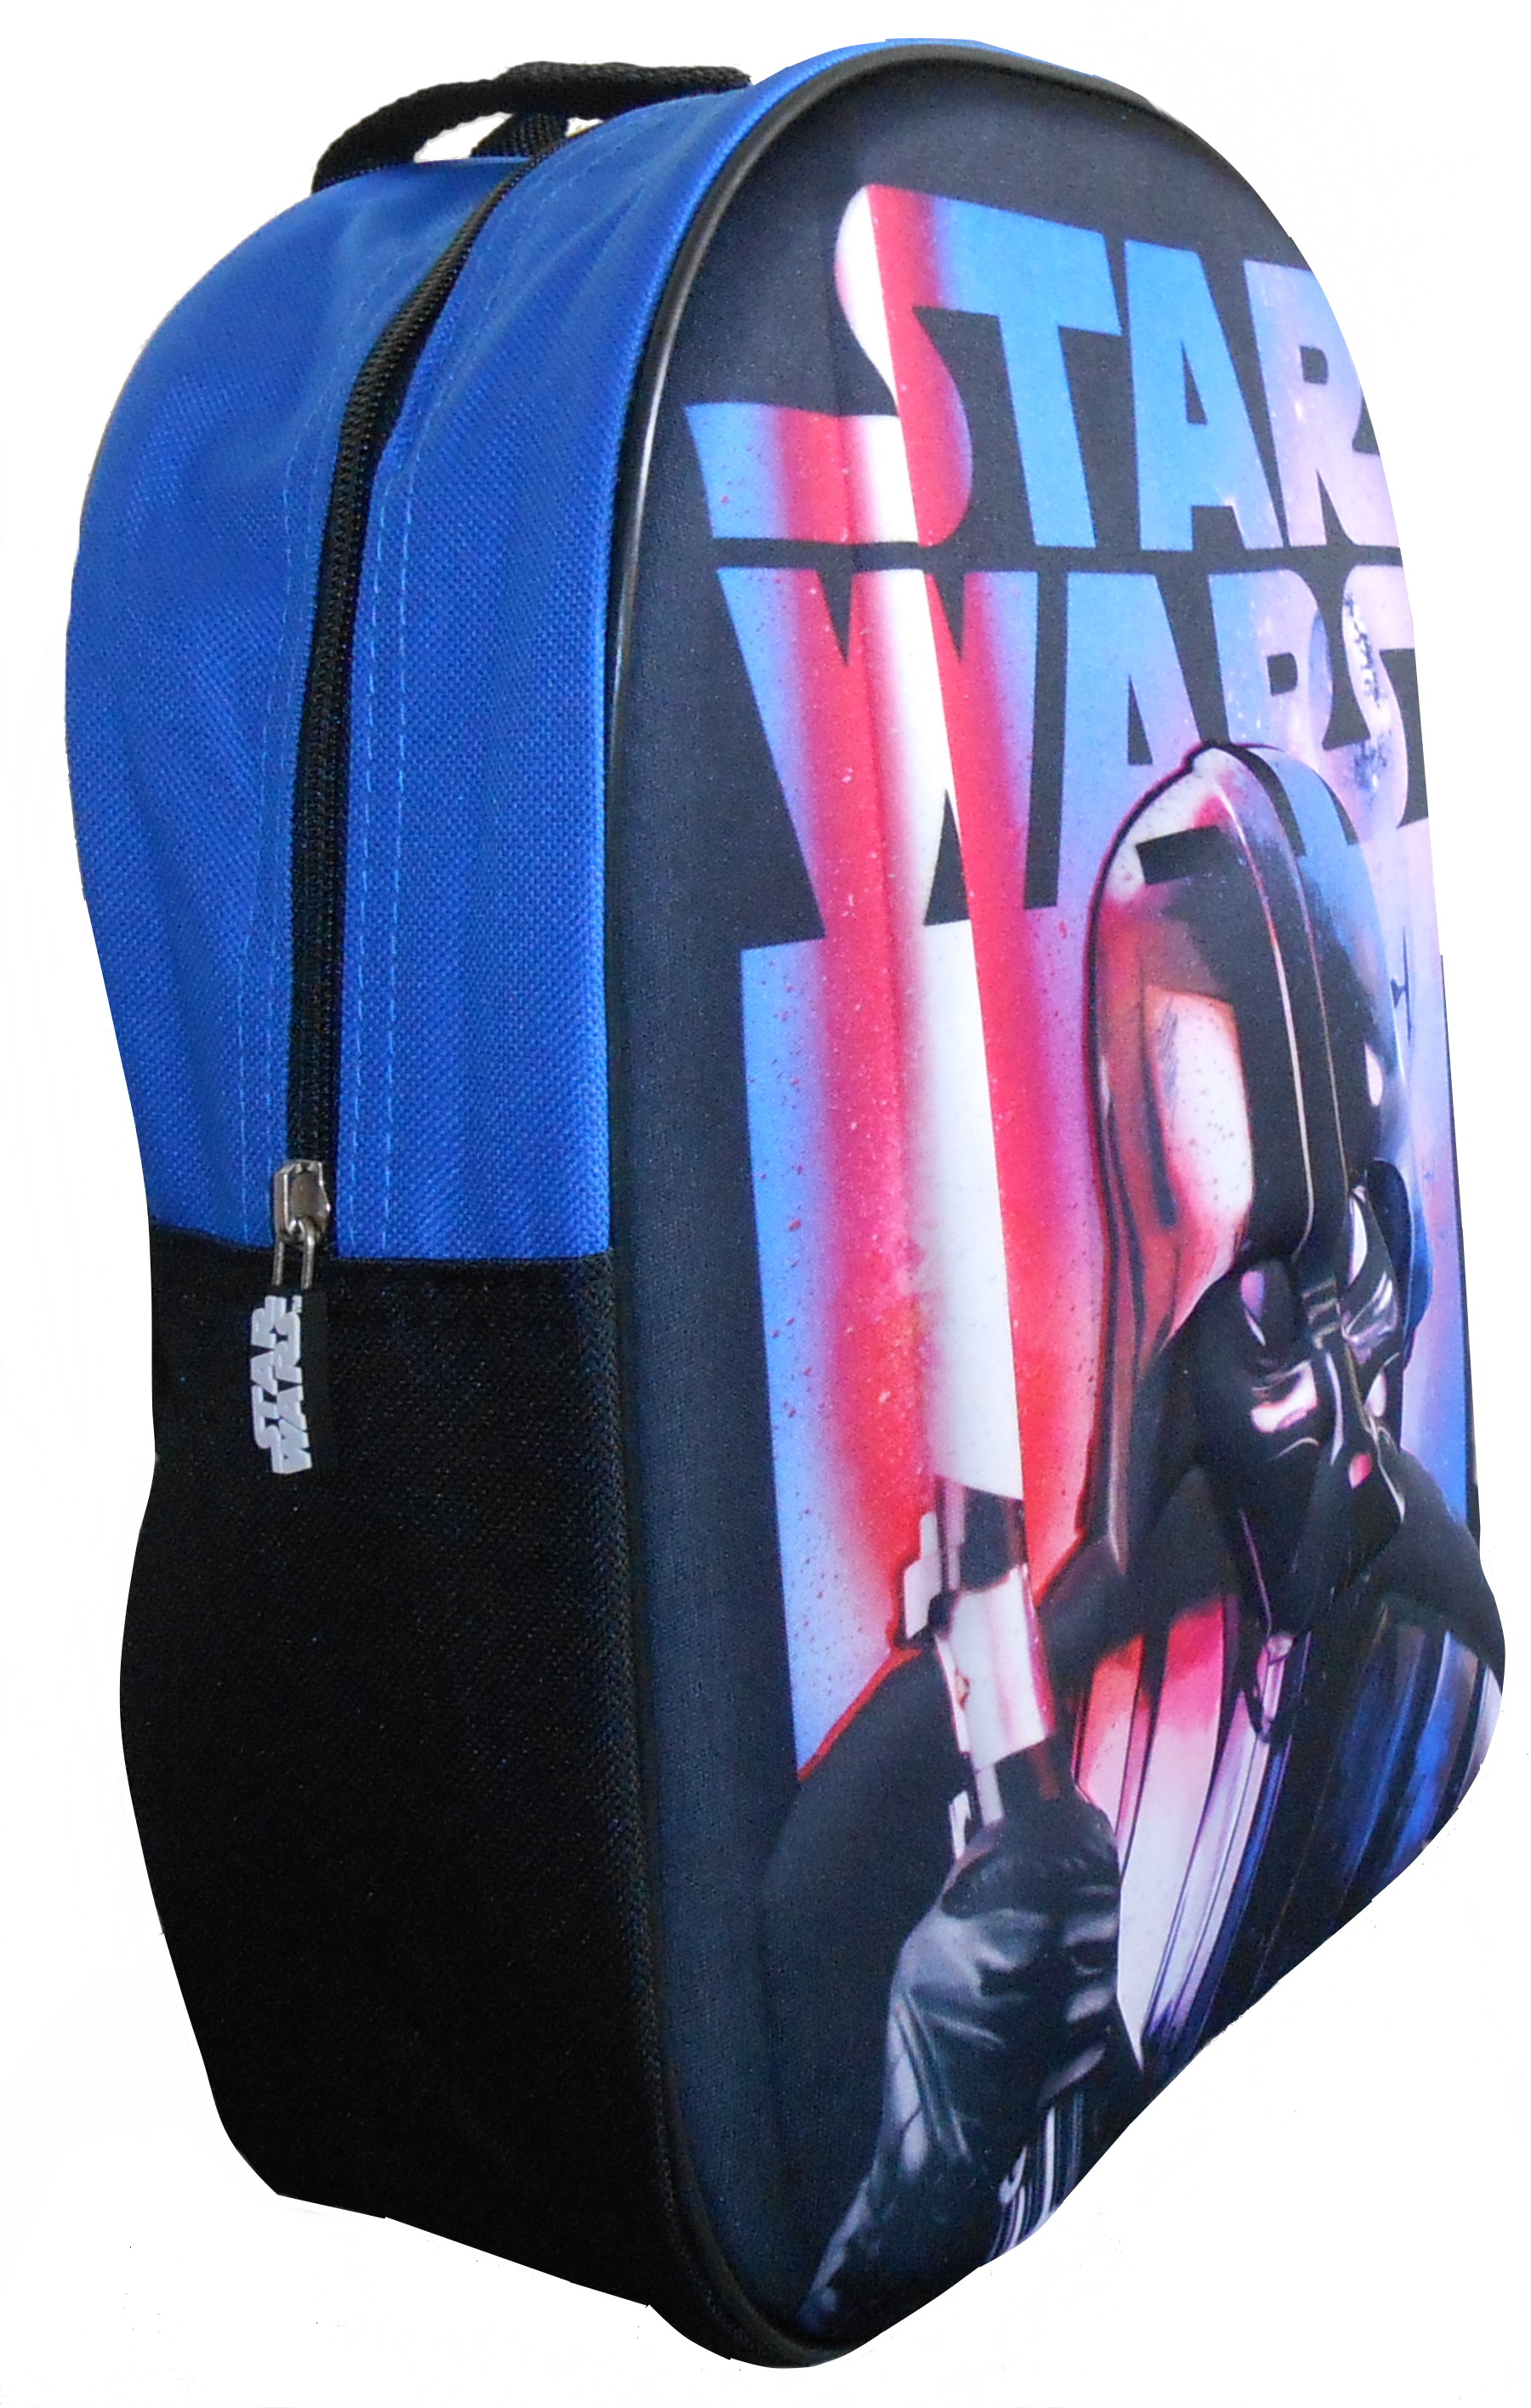 Star Wars DArth Vader Backpack PB217 (1).JPG  by Thingimijigs